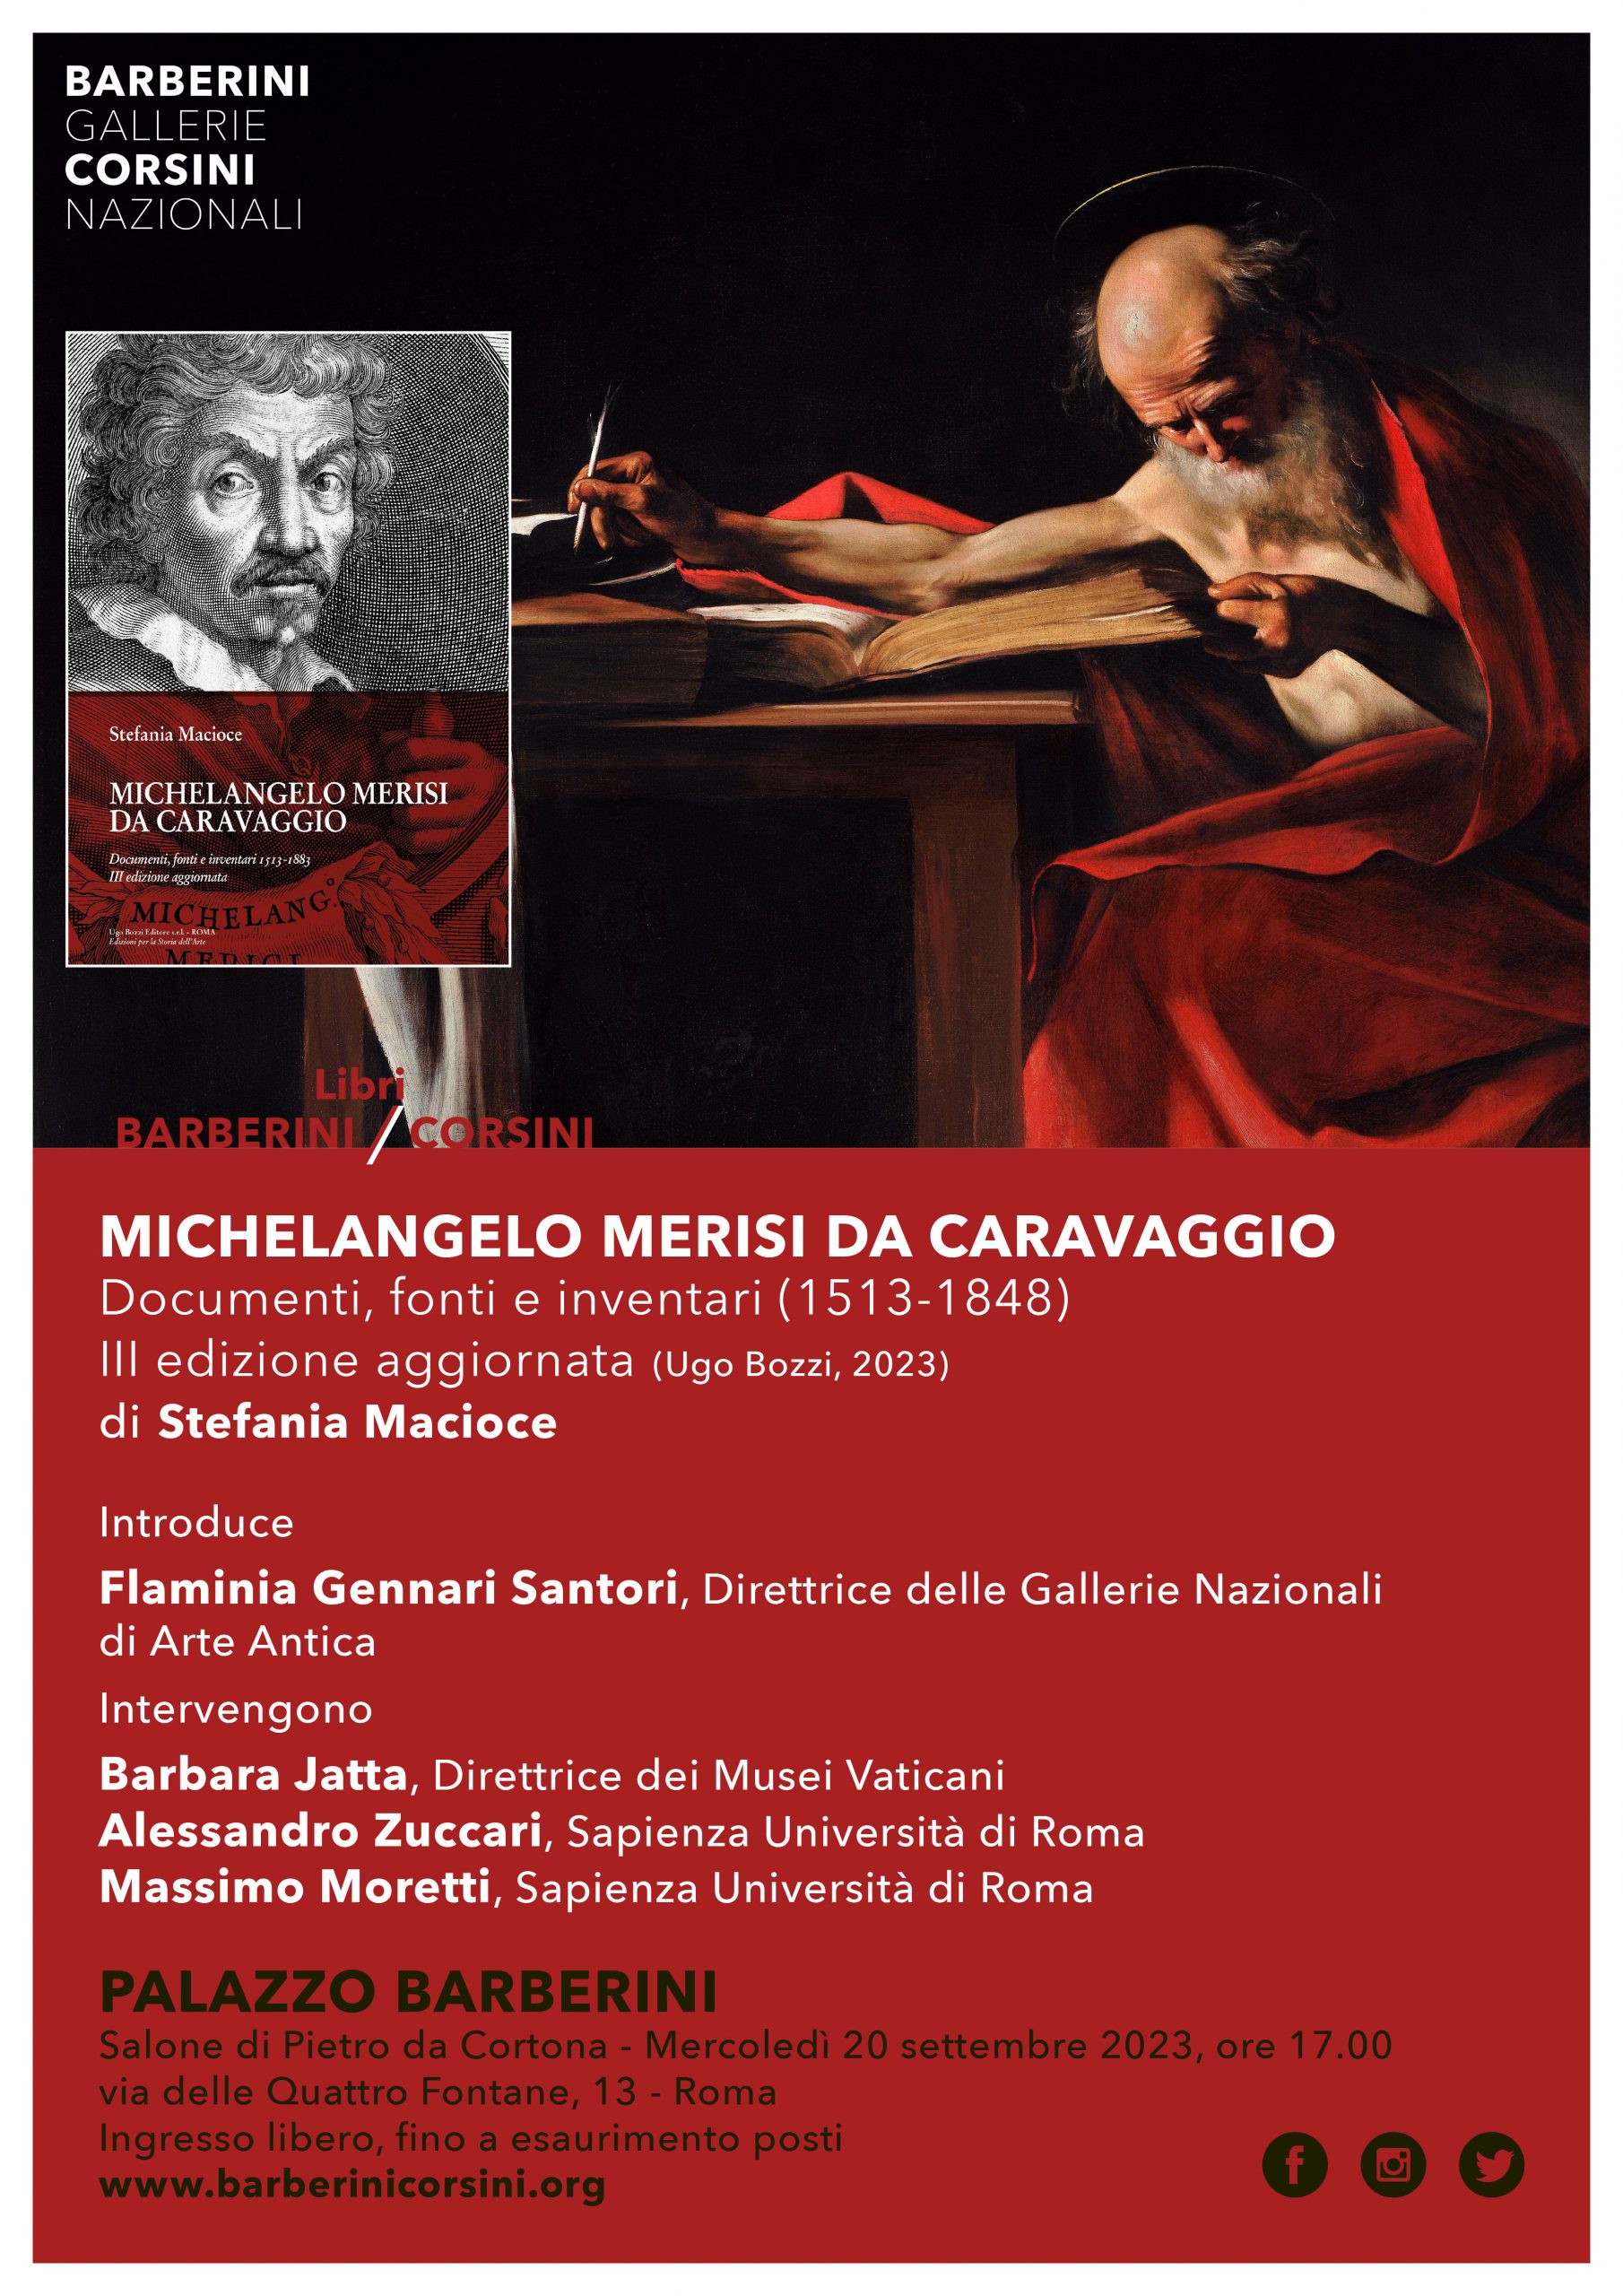 Michelangelo Merisi da Caravaggio. Documenti, fonti e inventari (1513-1848). III edizione aggiornata